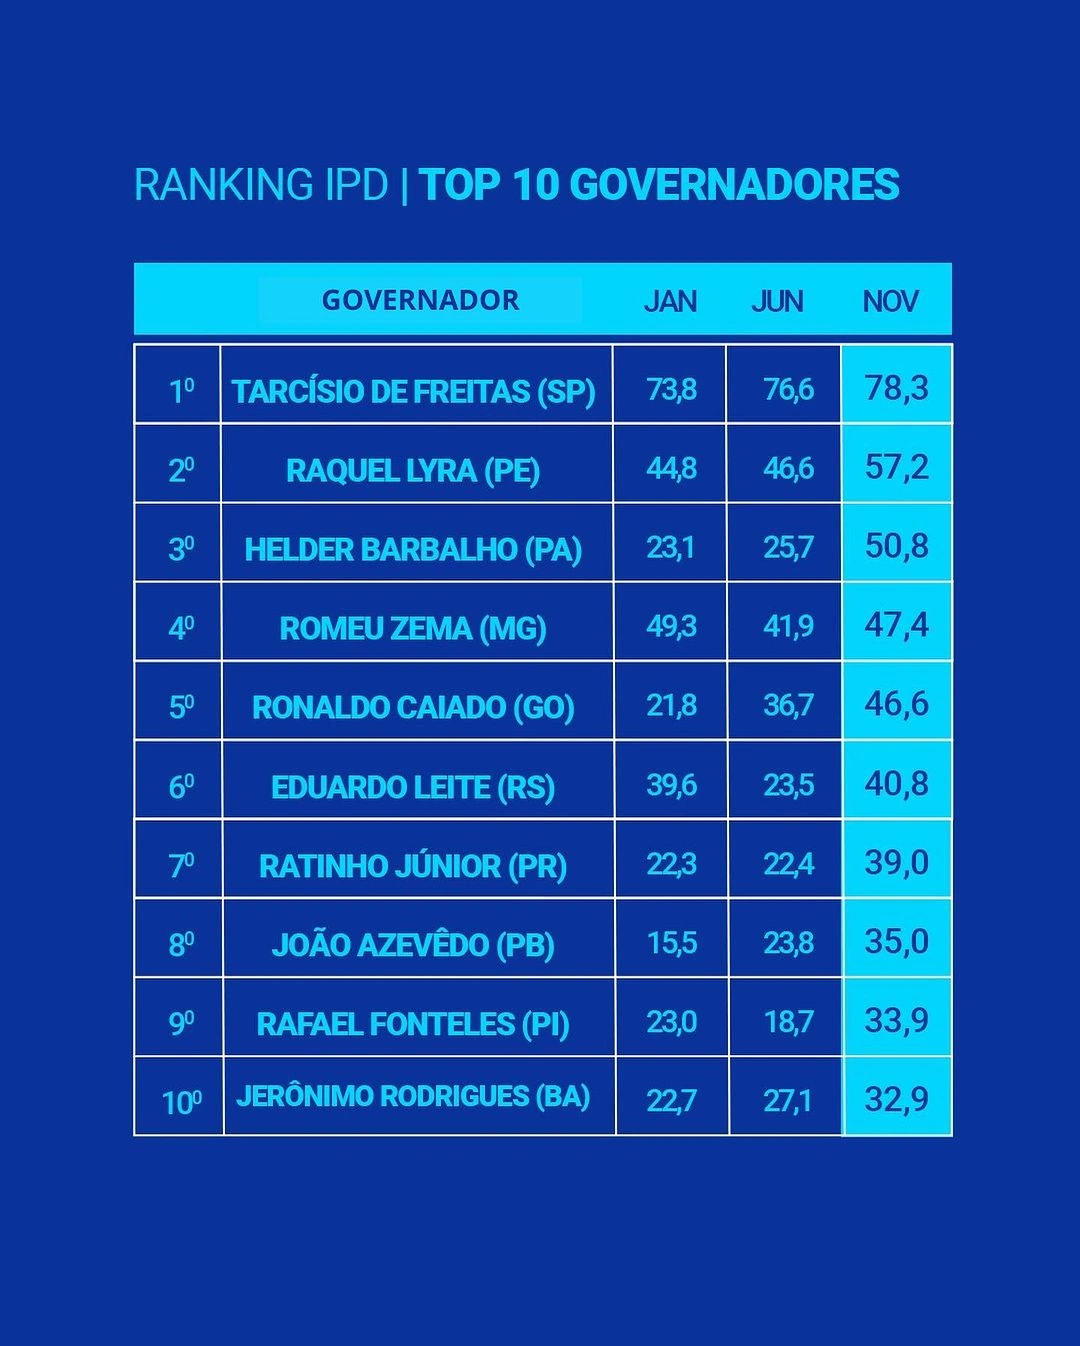 Ranking dos 10 governadores com maior Índice de Popularidade Digital (IPD)